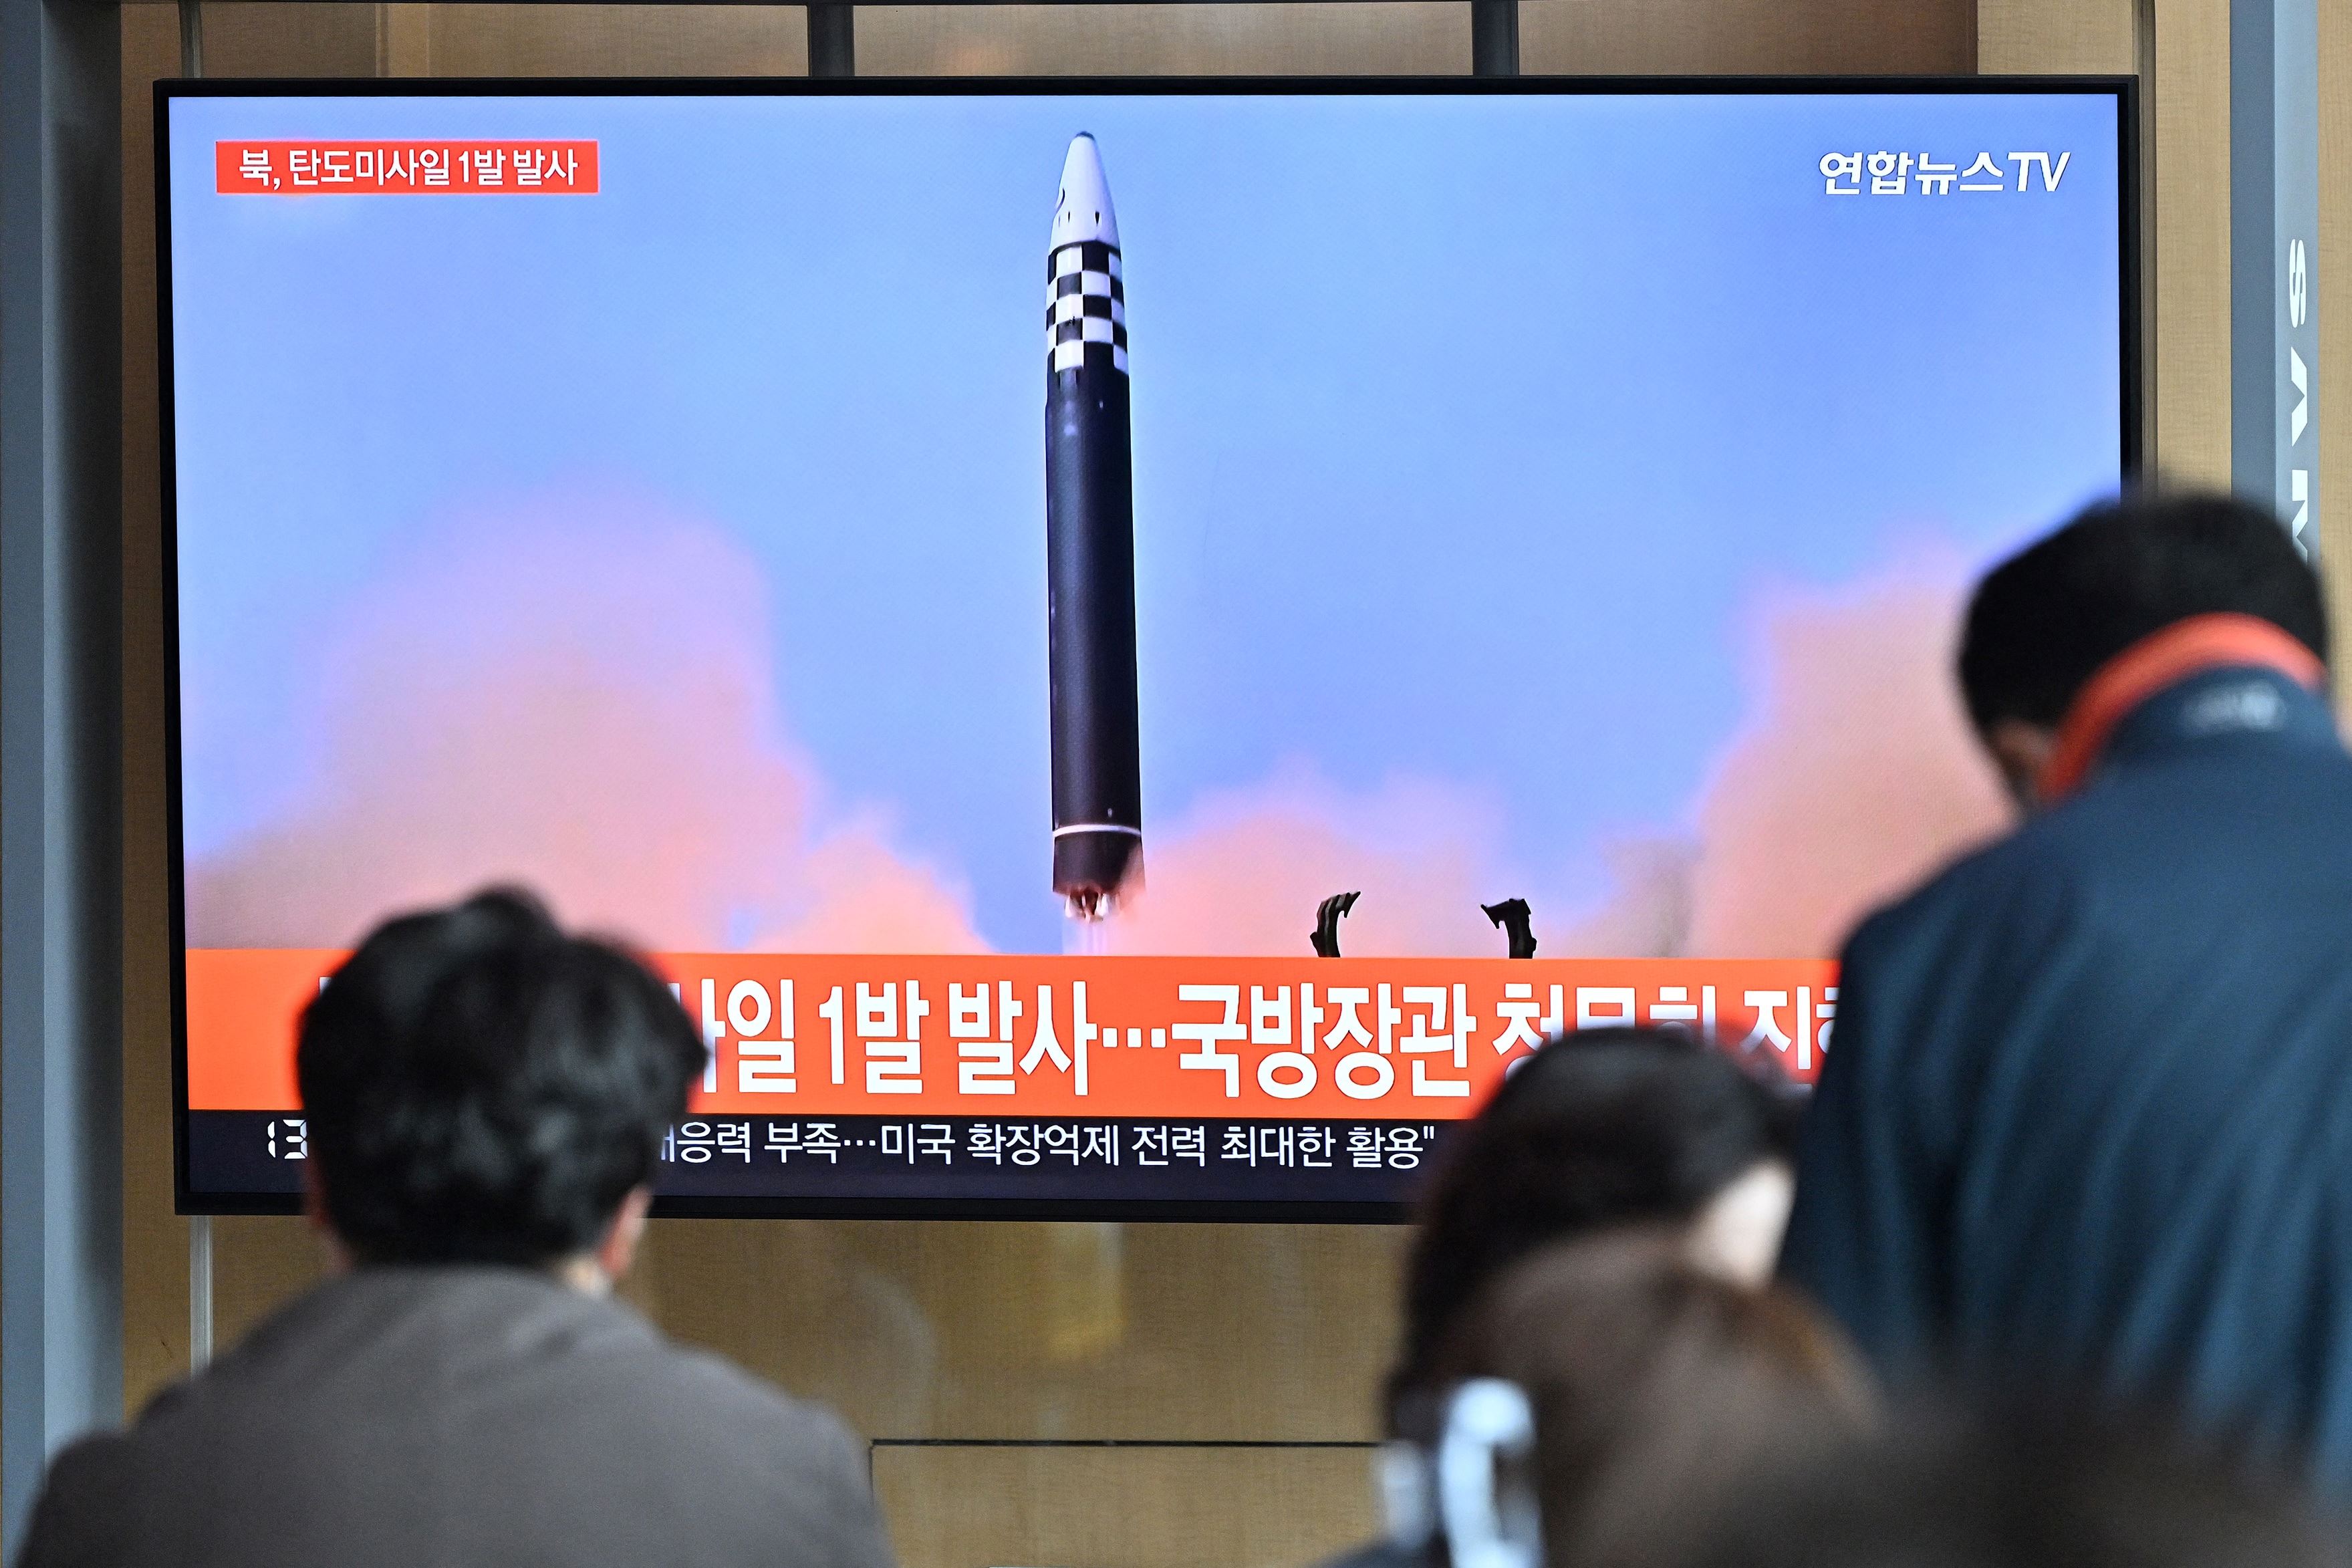 كوريا الشمالية تتحضر لتجربة نووية جديدة.. متى؟